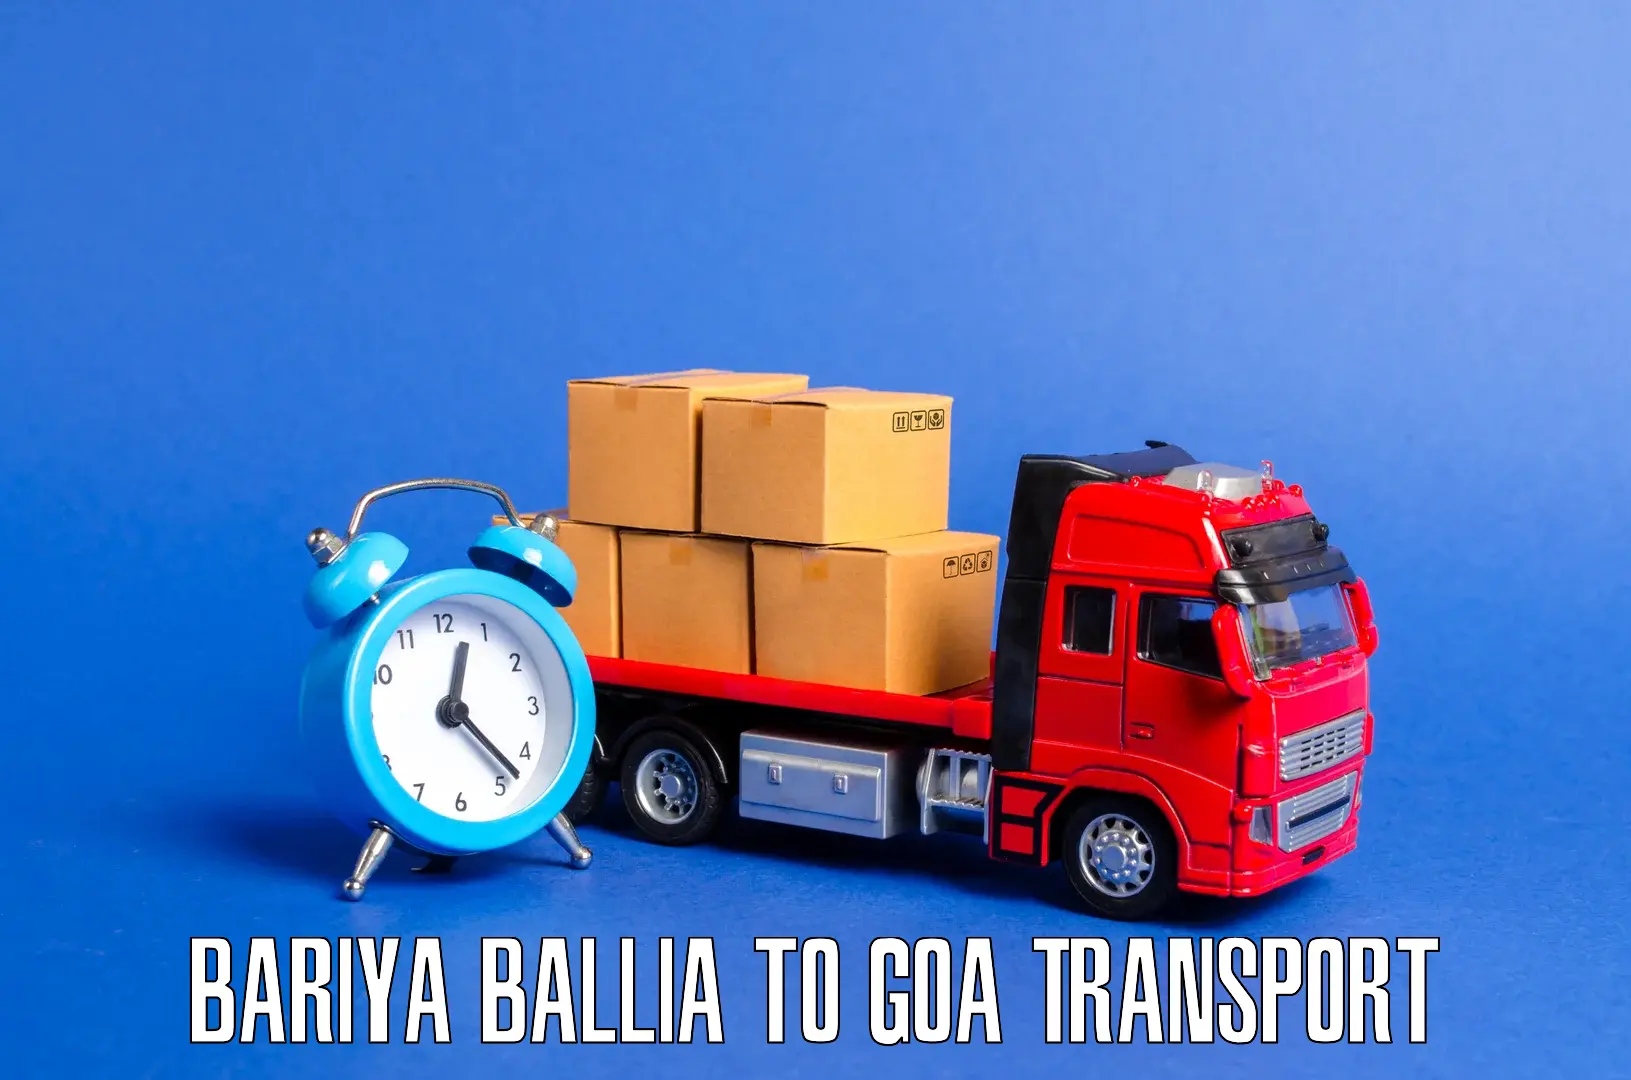 Cargo transport services Bariya Ballia to Panjim